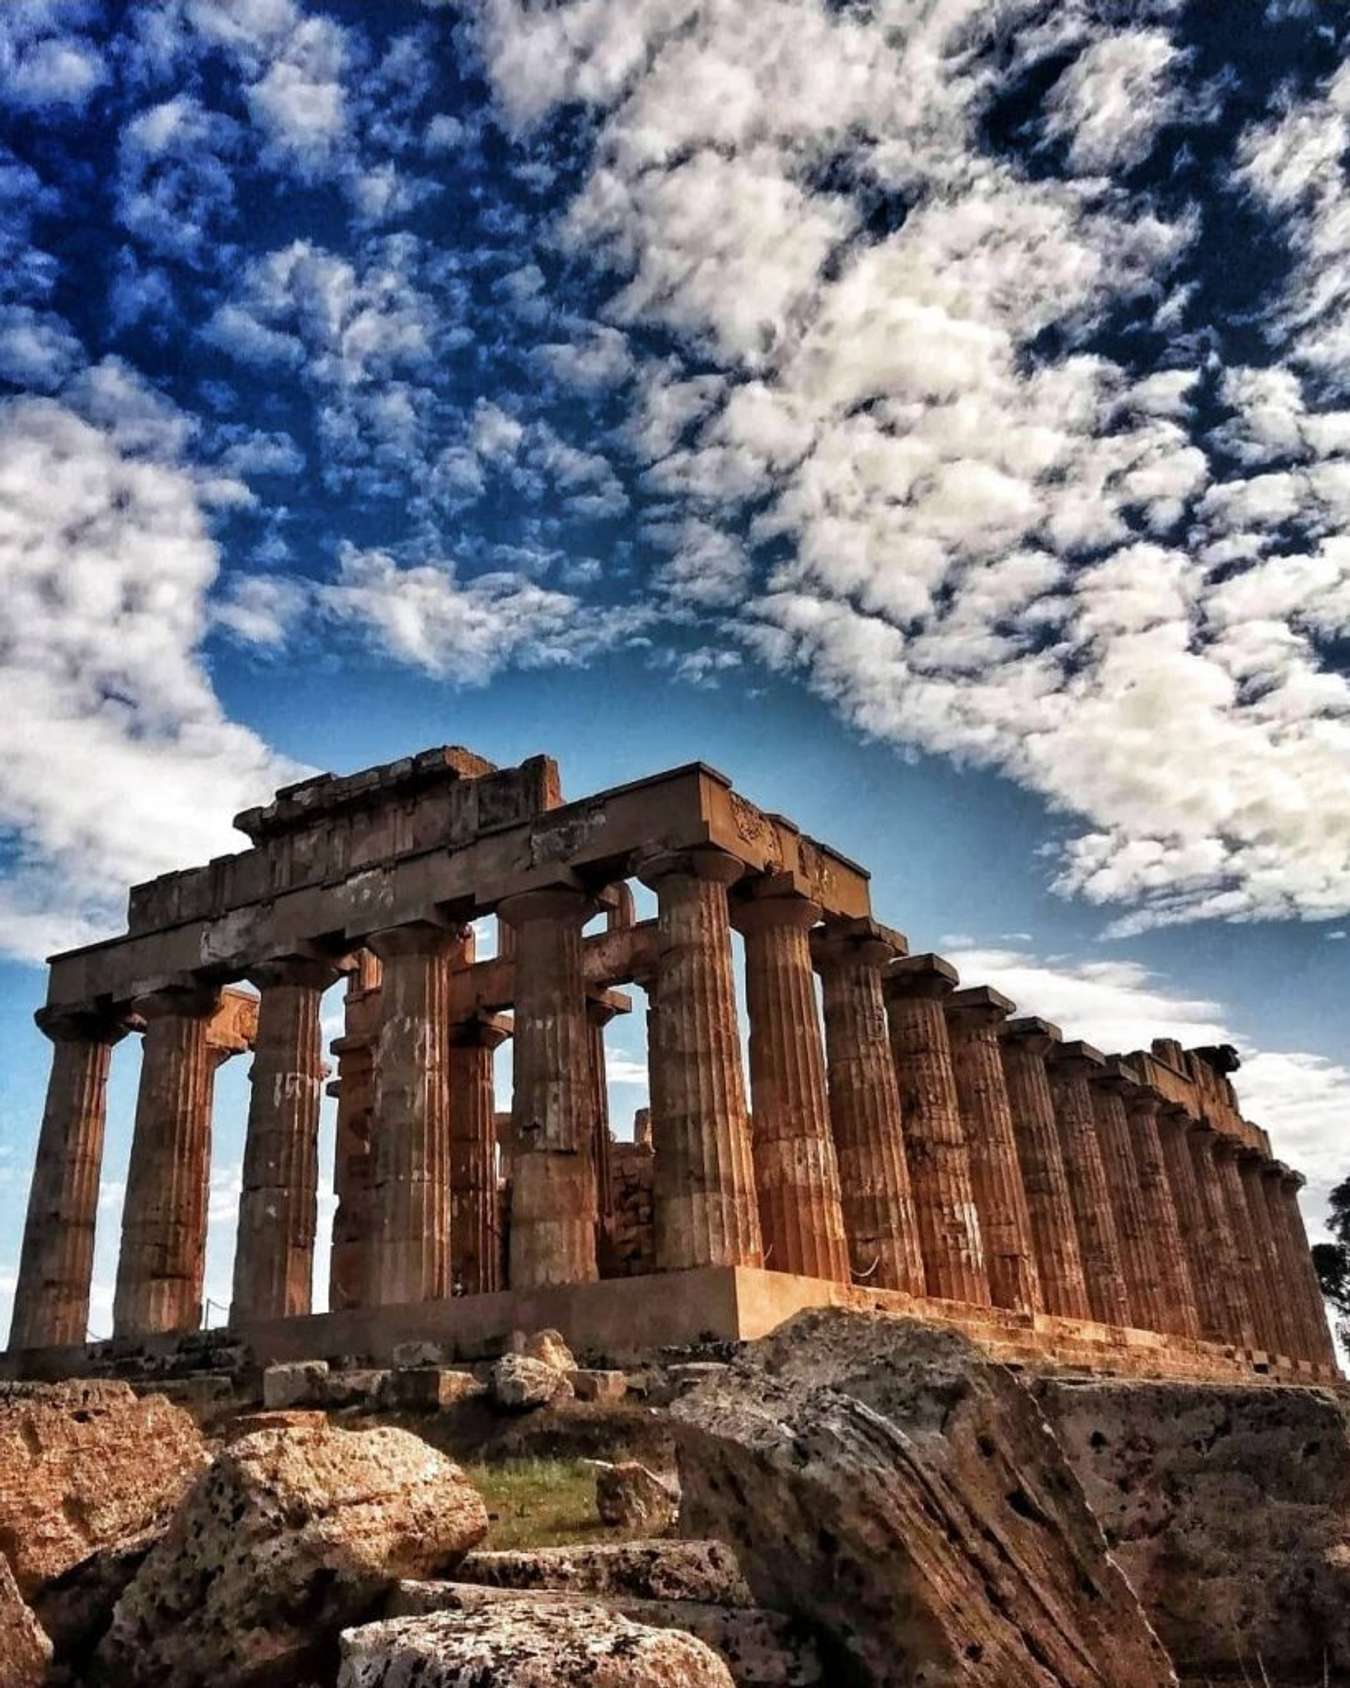 Hy Lạp được biết đến là một trong những điểm đến du lịch hấp dẫn với kiến trúc cổ kính, những bãi biển đẹp và văn hóa độc đáo. Hãy cùng khám phá những nét đẹp của Hy Lạp và trải nghiệm những hoạt động thú vị khi đến đây.